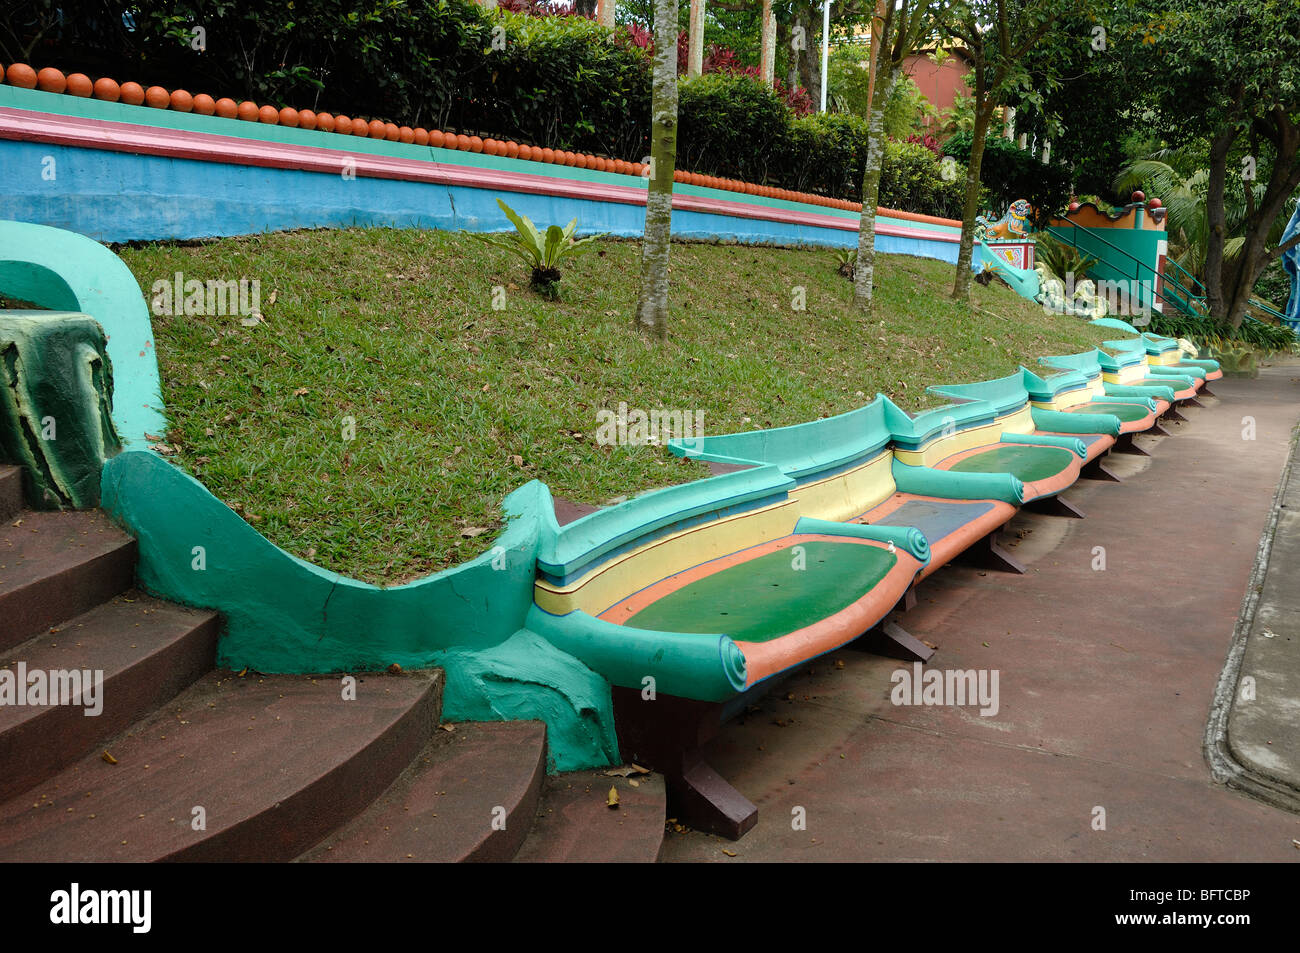 Multicolore o multicolore di cemento dipinta una panchina nel parco, panche o poltrone, Tiger Balm Gardens Chinese Theme Park, Singapore Foto Stock